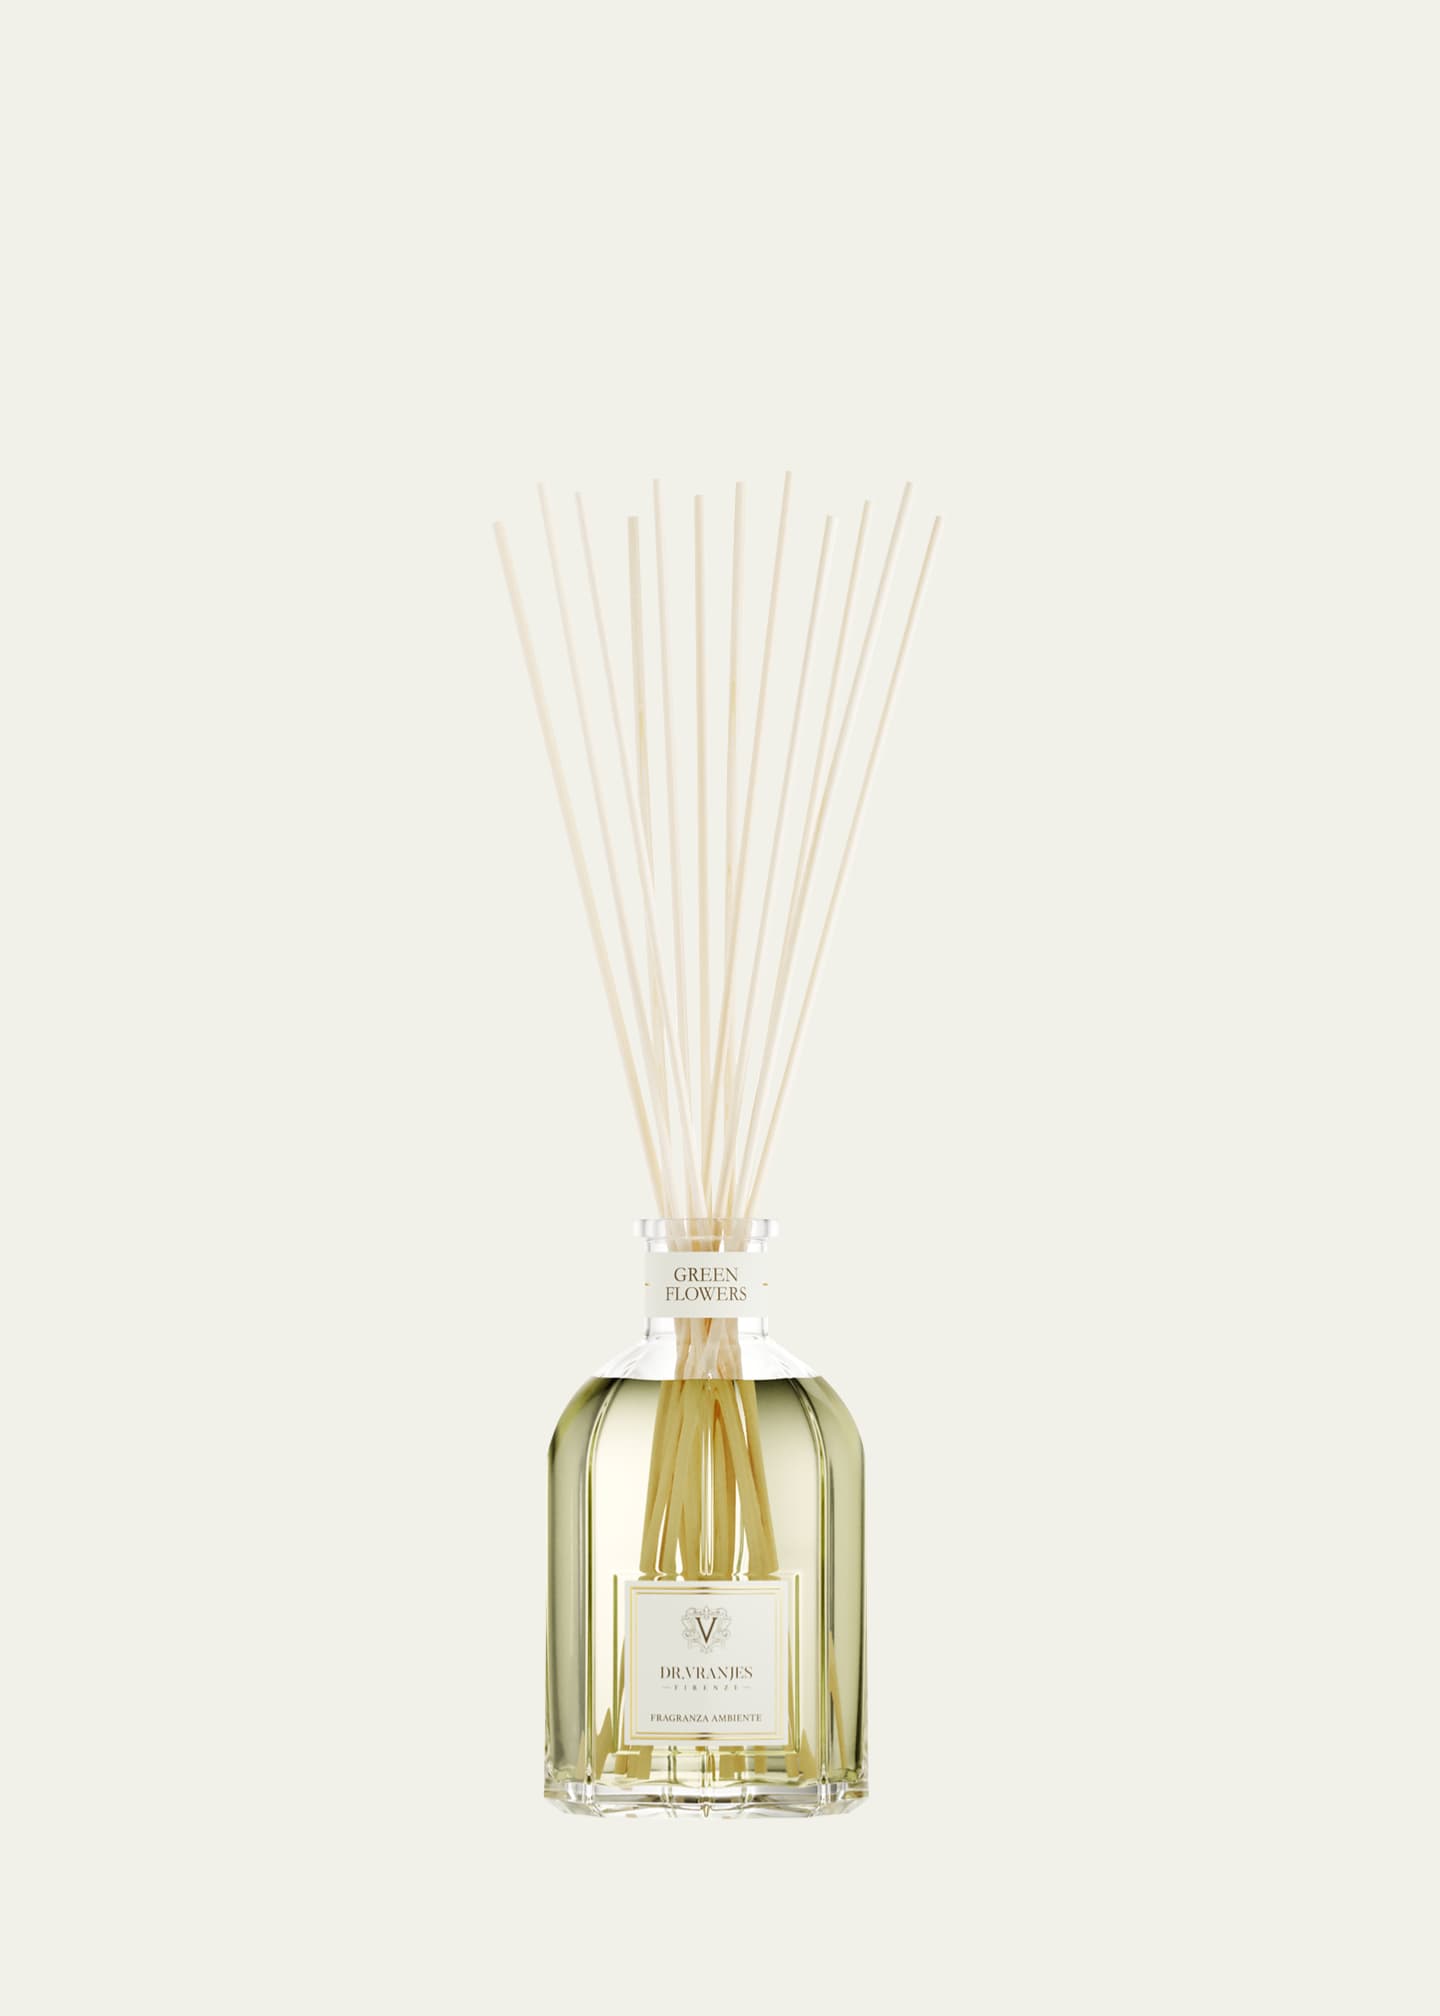 Dr. Vranjes Firenze 17 oz. Green Flowers Bottle Home Fragrance - Bergdorf  Goodman